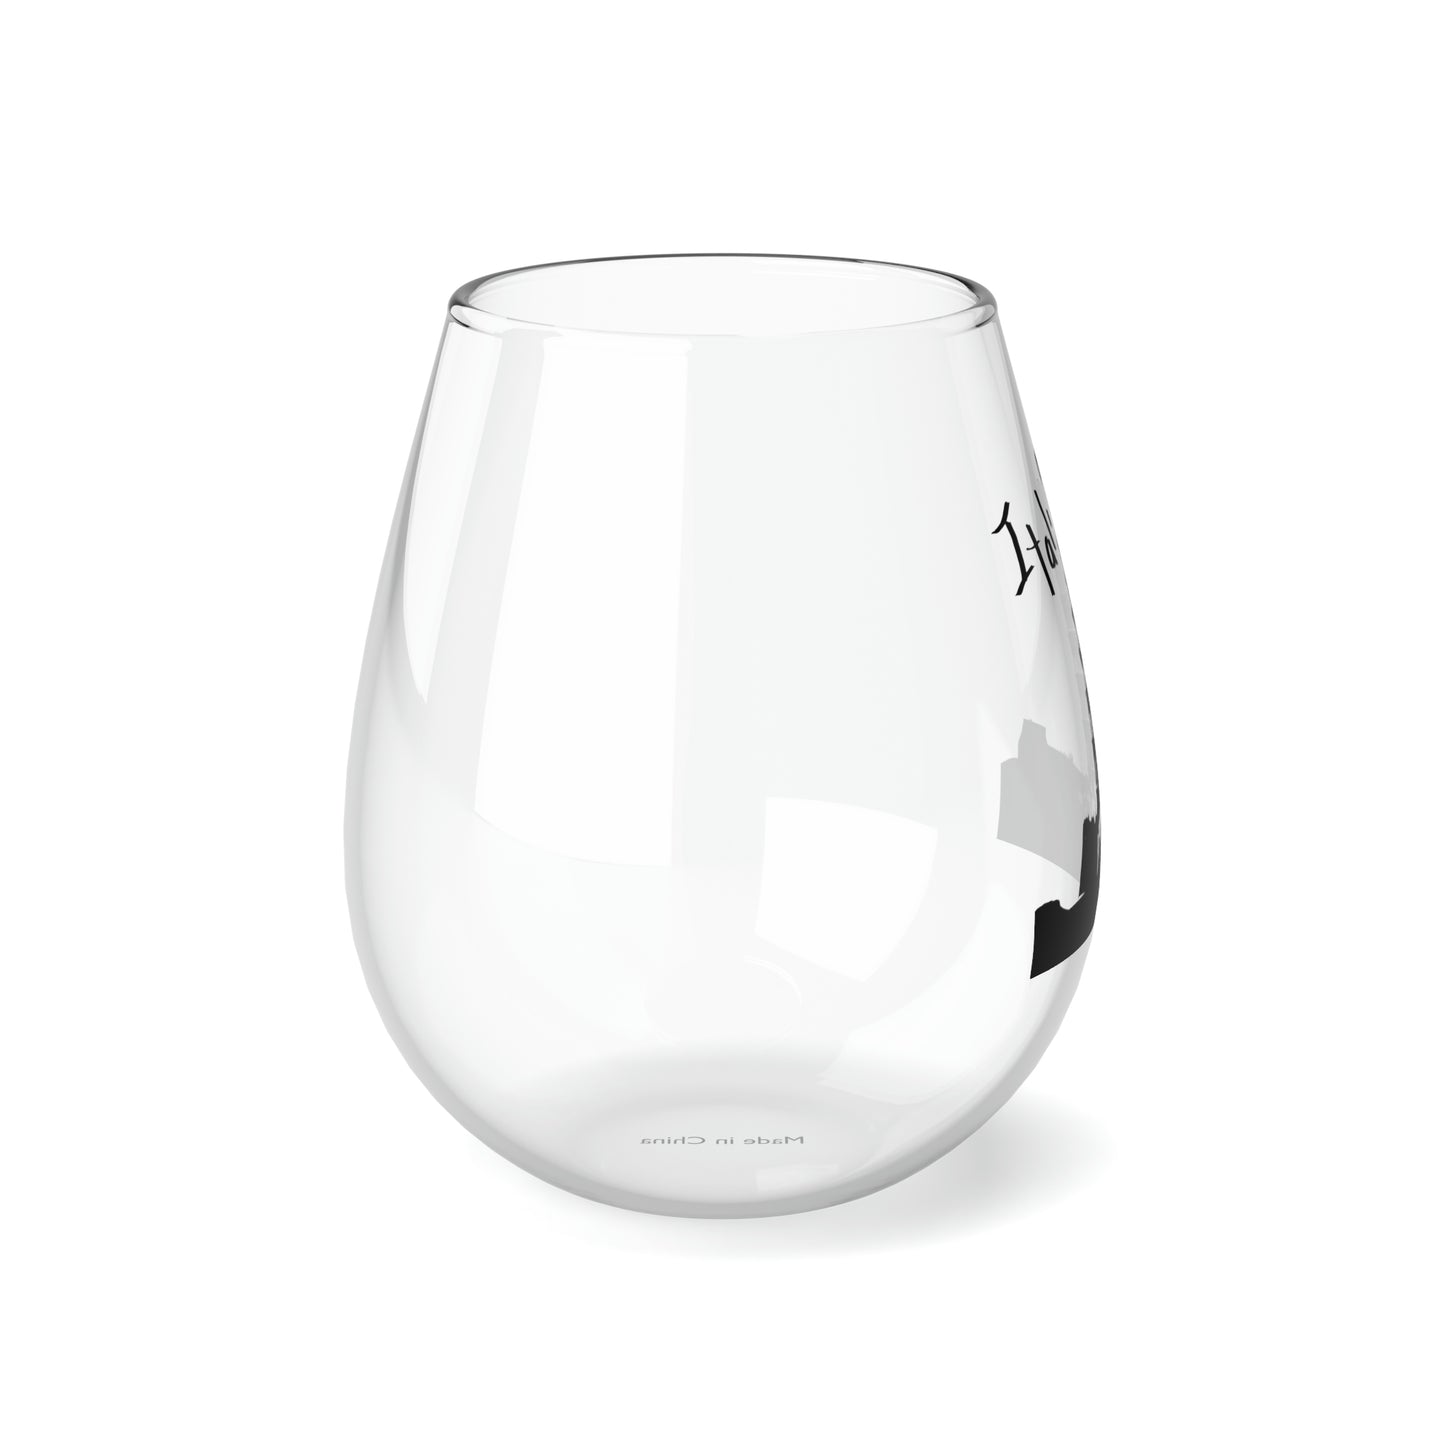 Pisa Italia Stemless Wine Glass, 11.75oz